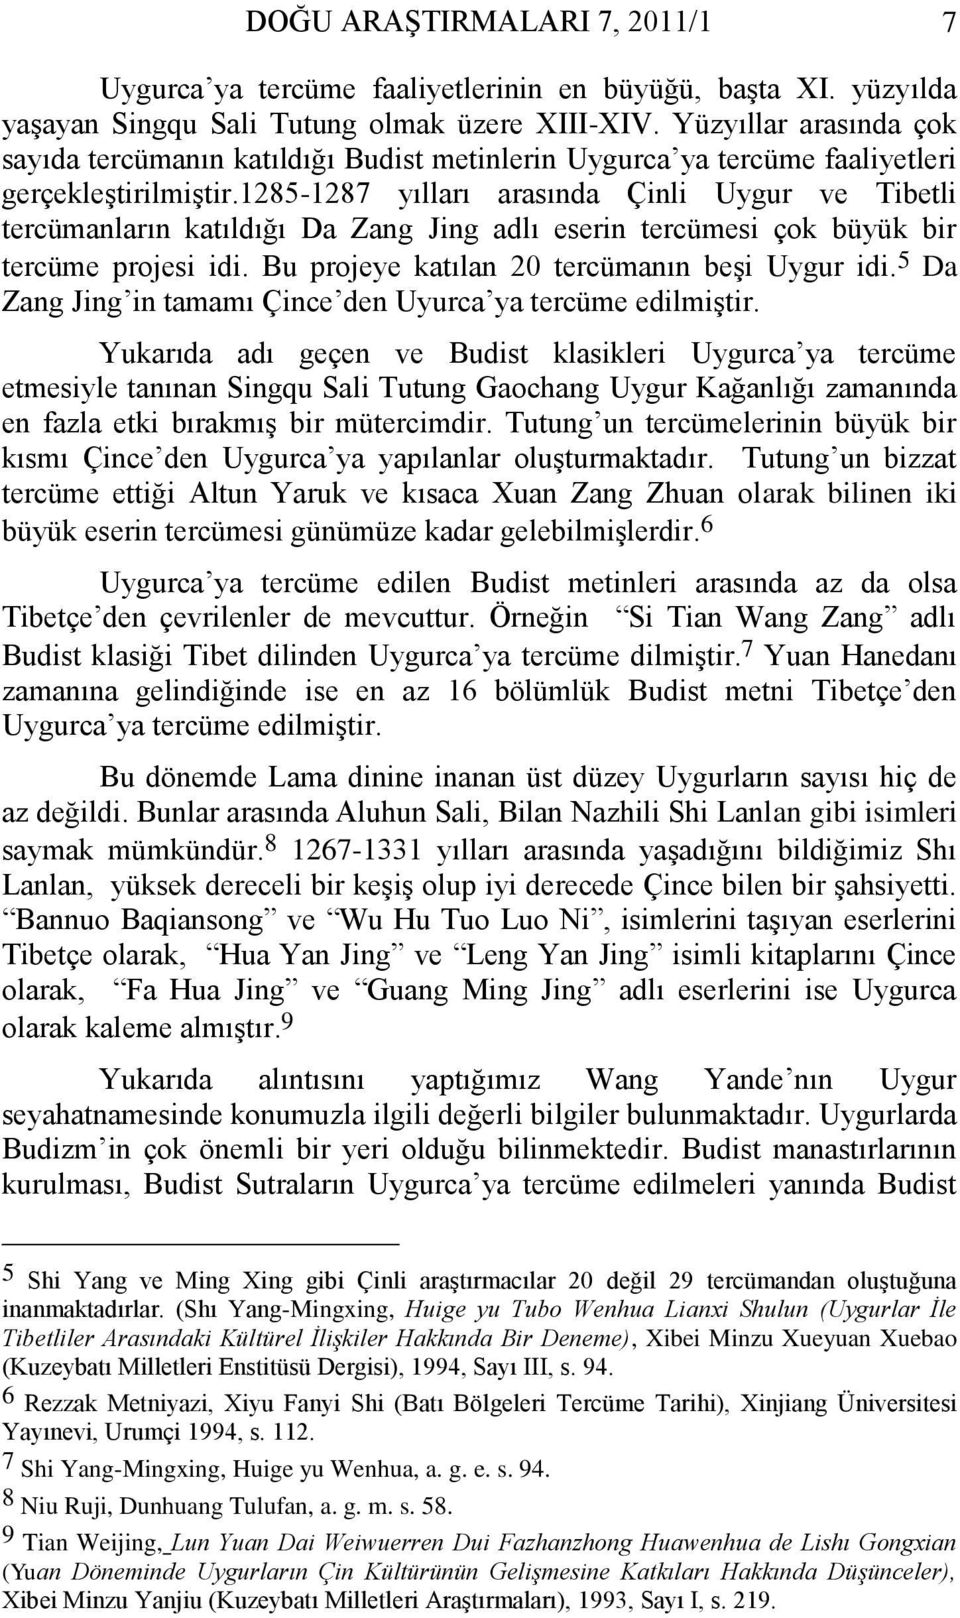 1285-1287 yılları arasında Çinli Uygur ve Tibetli tercümanların katıldığı Da Zang Jing adlı eserin tercümesi çok büyük bir tercüme projesi idi. Bu projeye katılan 20 tercümanın beşi Uygur idi.